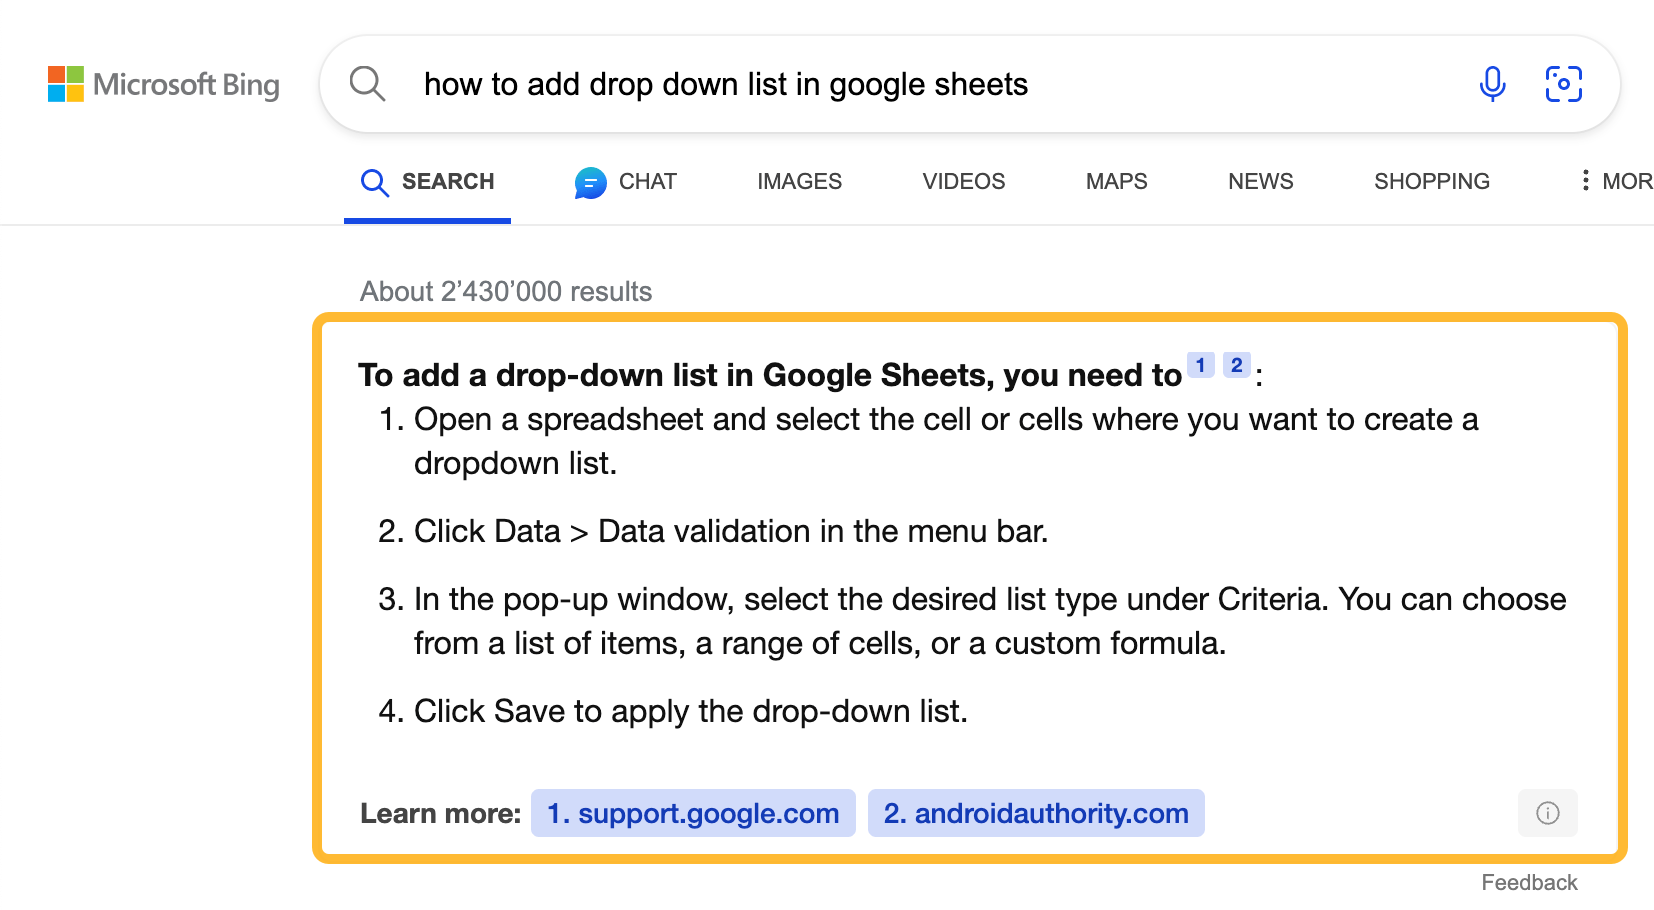 Résultats de recherche de Bing pour "comment ajouter une liste déroulante dans Google Sheets"